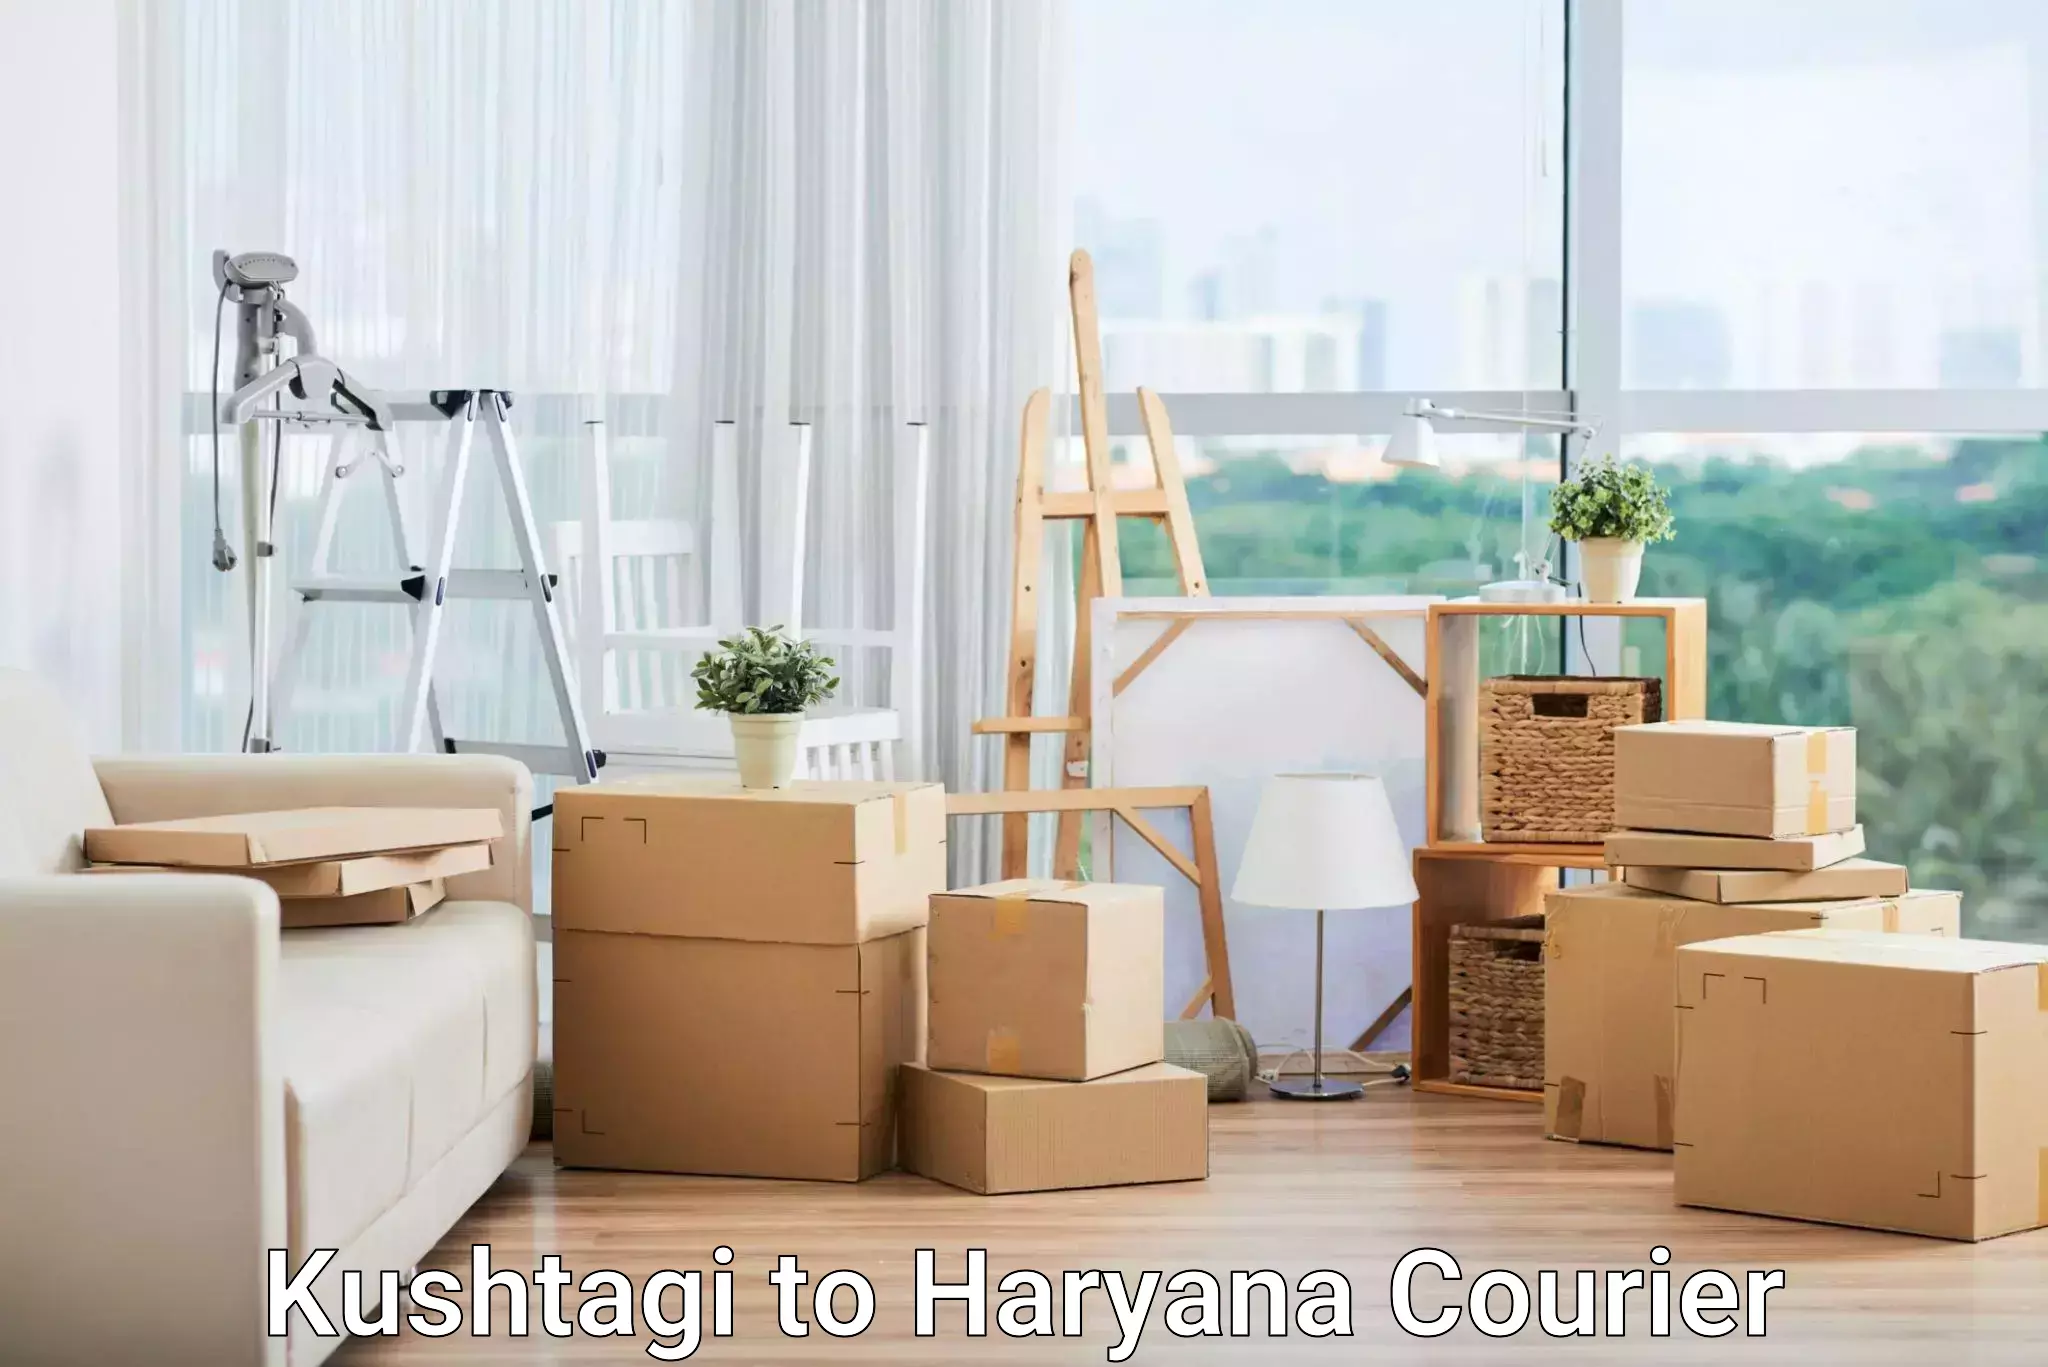 Optimized courier strategies Kushtagi to NCR Haryana